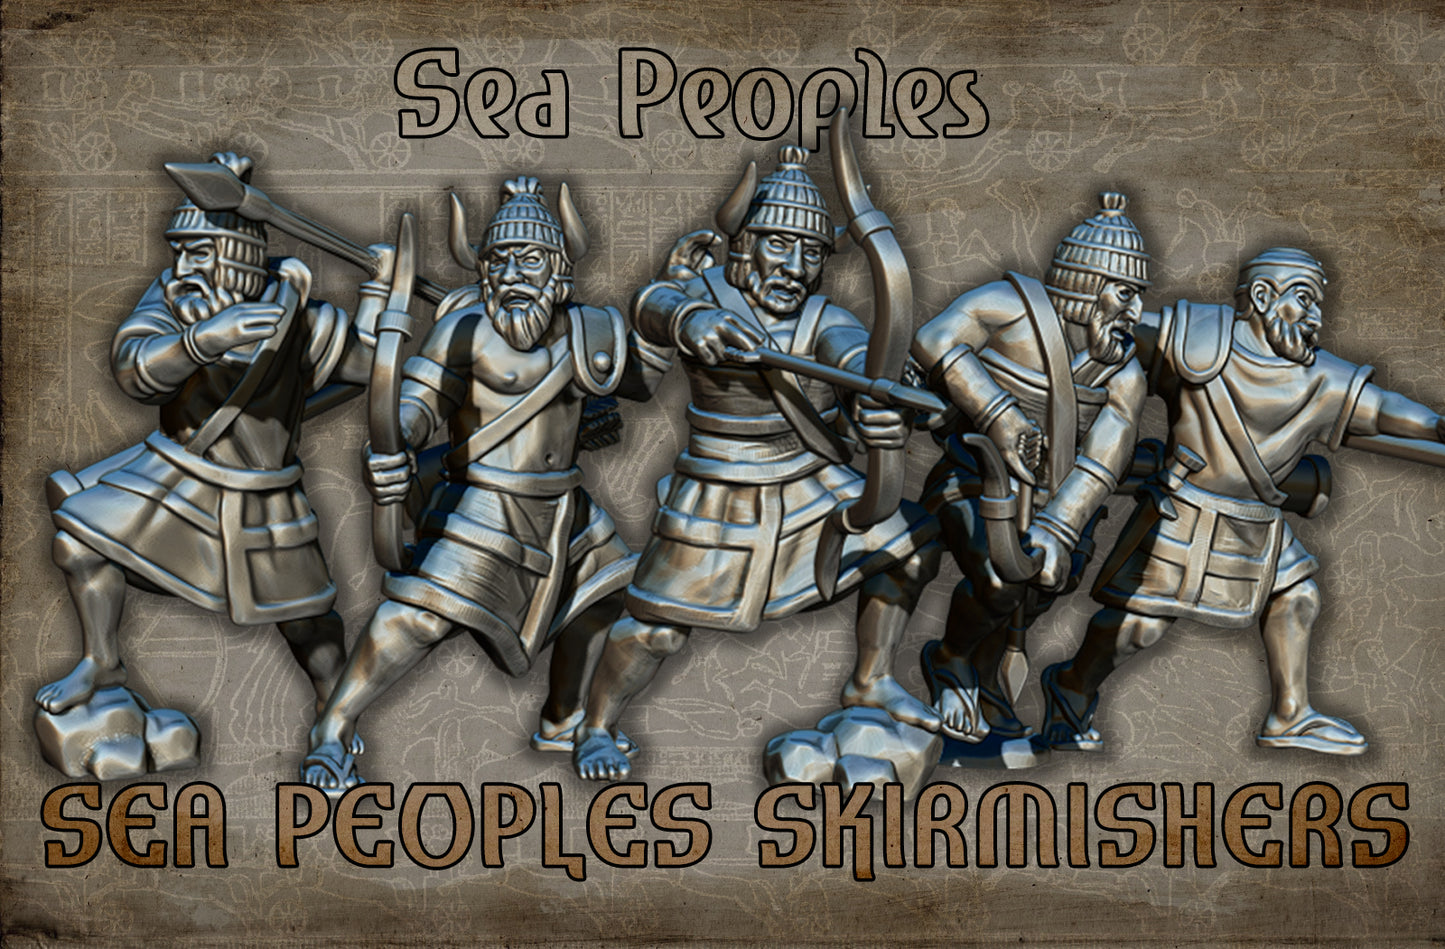 Sea People Skirmishers